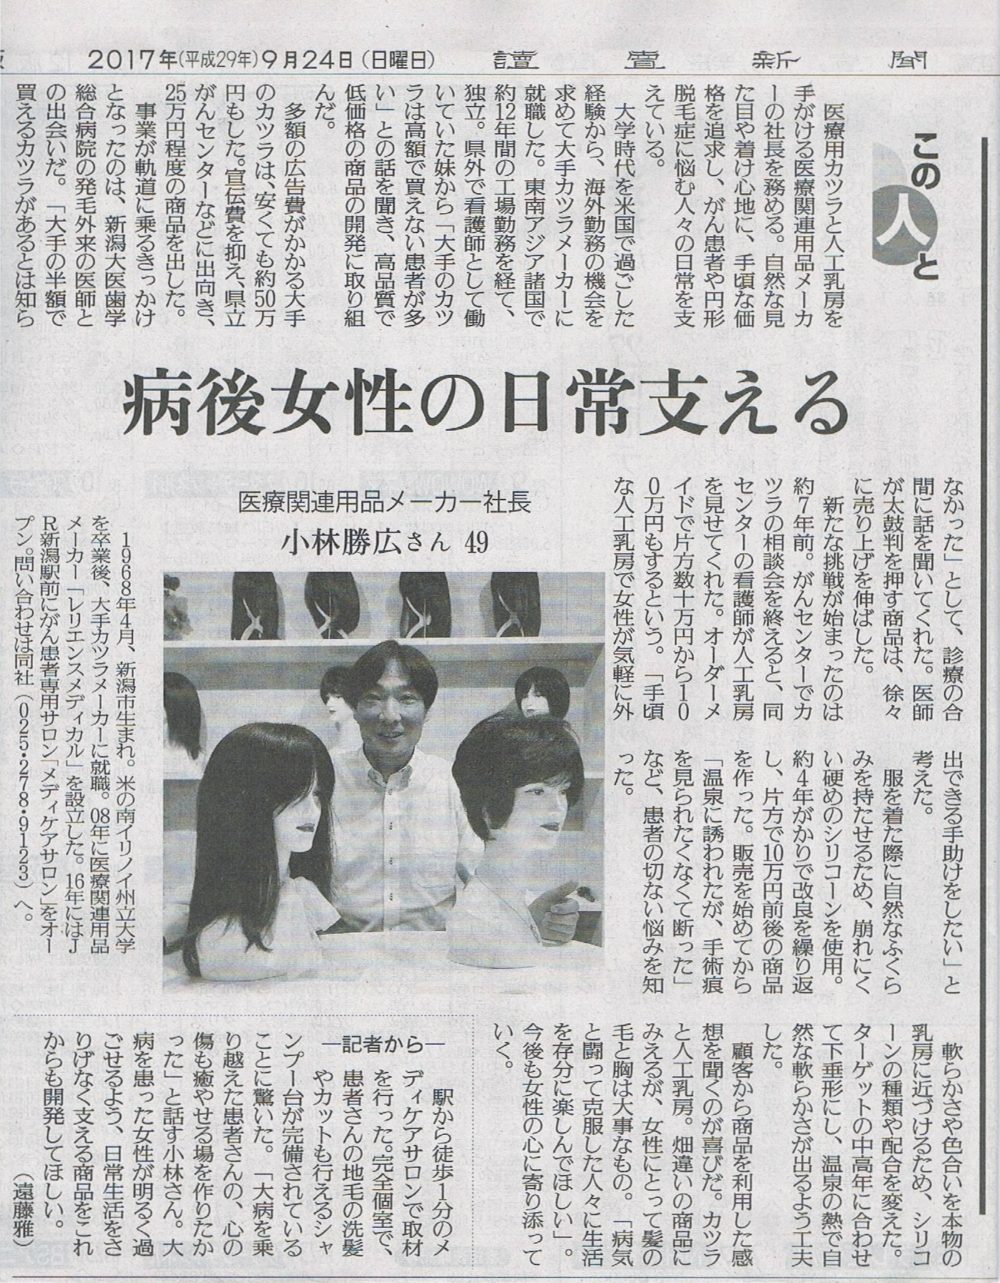 29年9月24日読売新聞に新潟駅前メディケア相談室紹介されました